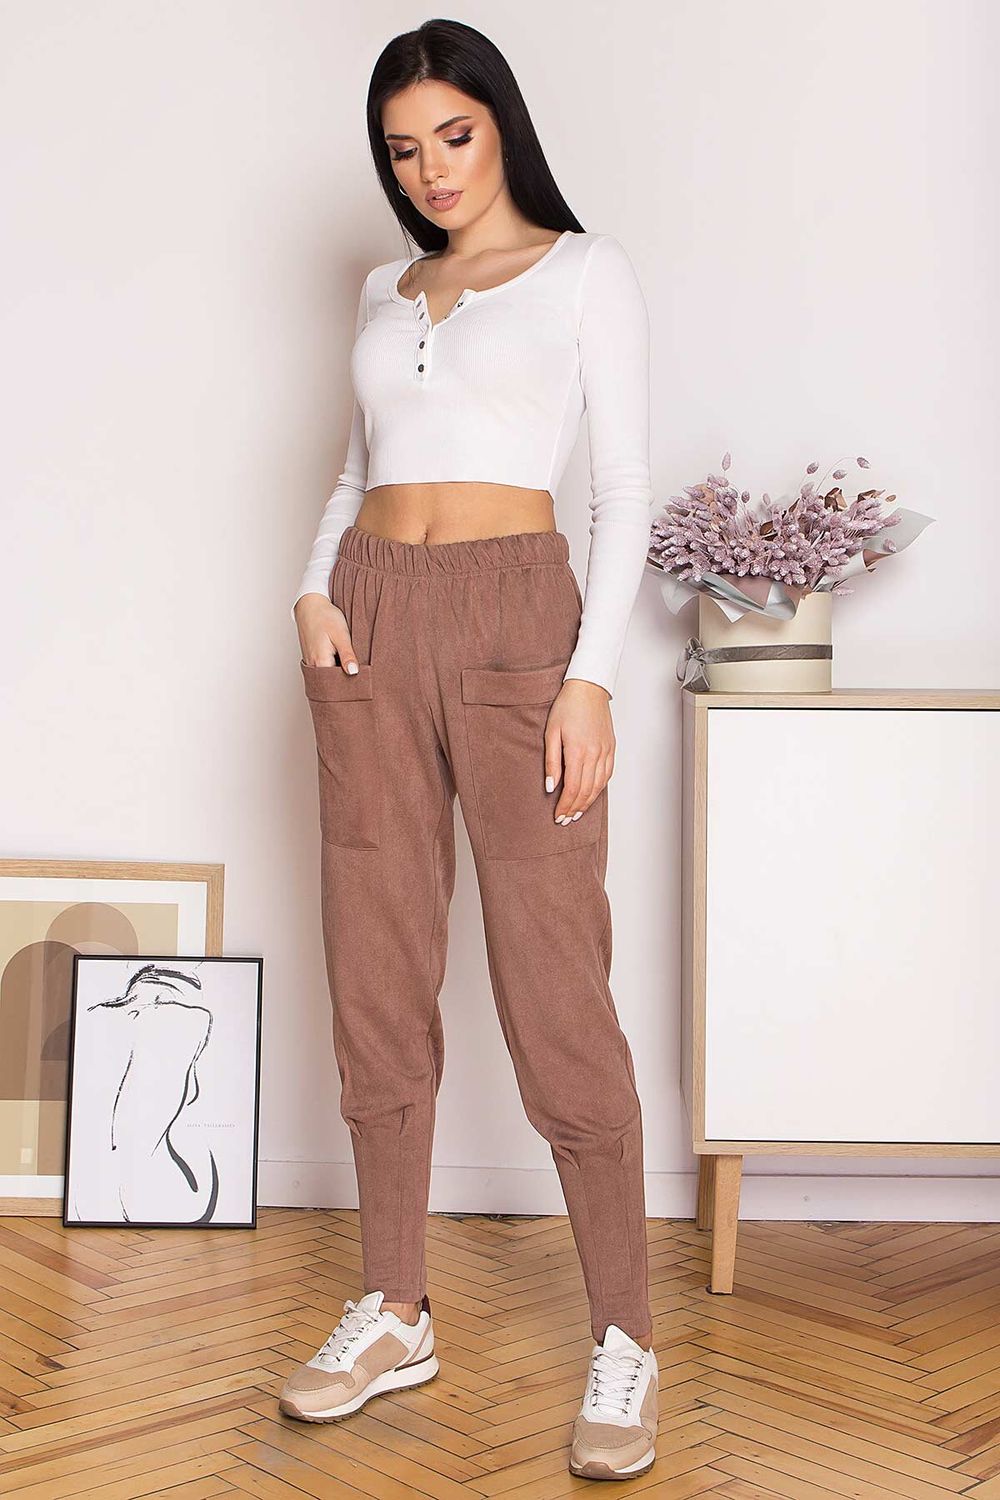 Женские замшевые штаны с карманами бежевые - фото